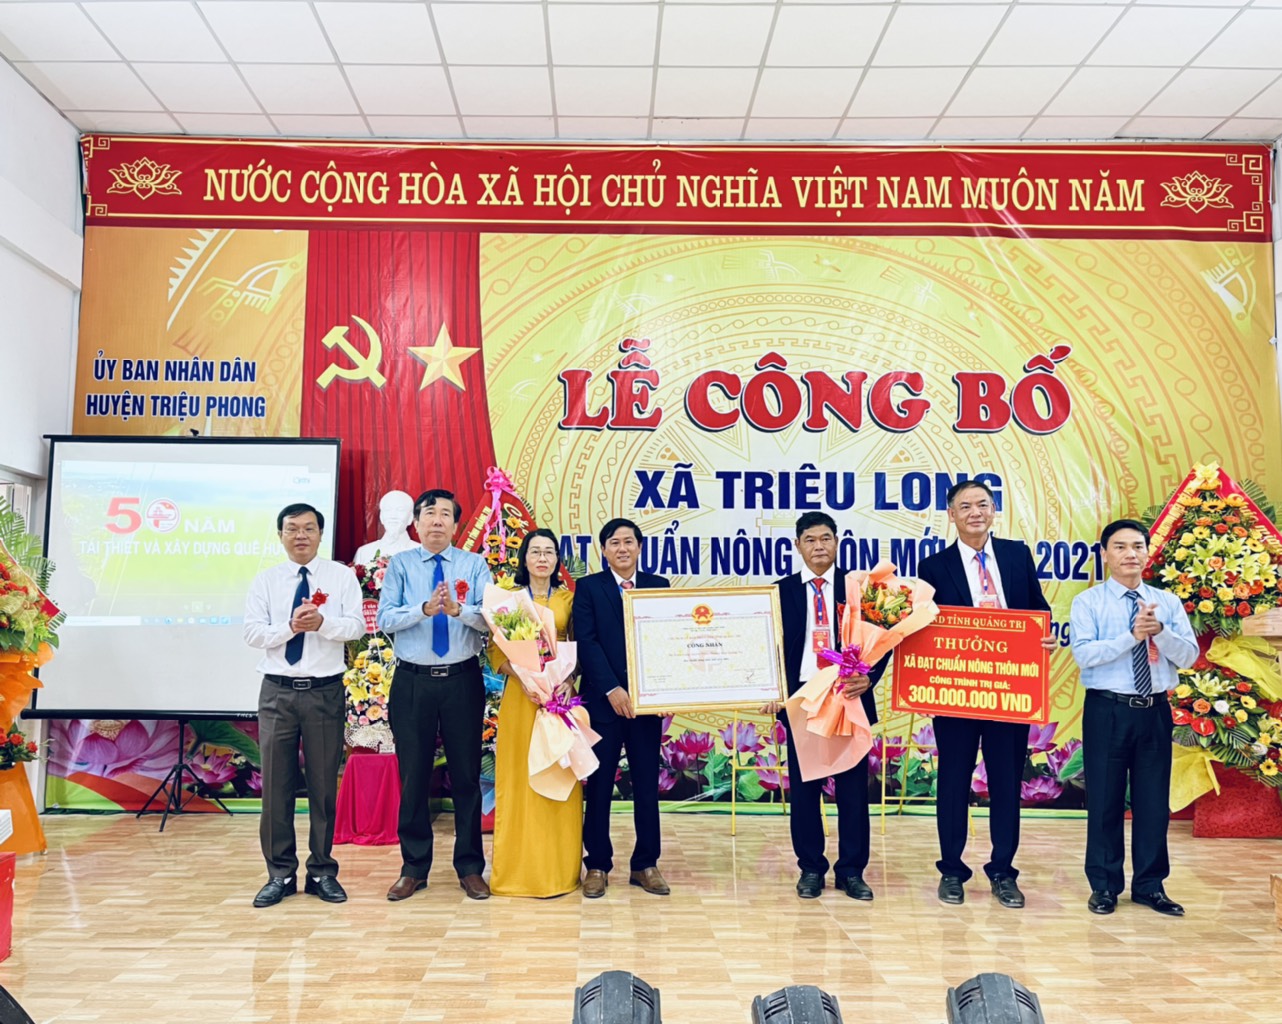 Lãnh đạo xã Triệu Long đón nhận Bằng công nhận xã đạt chuẩn nông thôn mới và phần thưởng 300 triệu đồng của UBND tỉnh